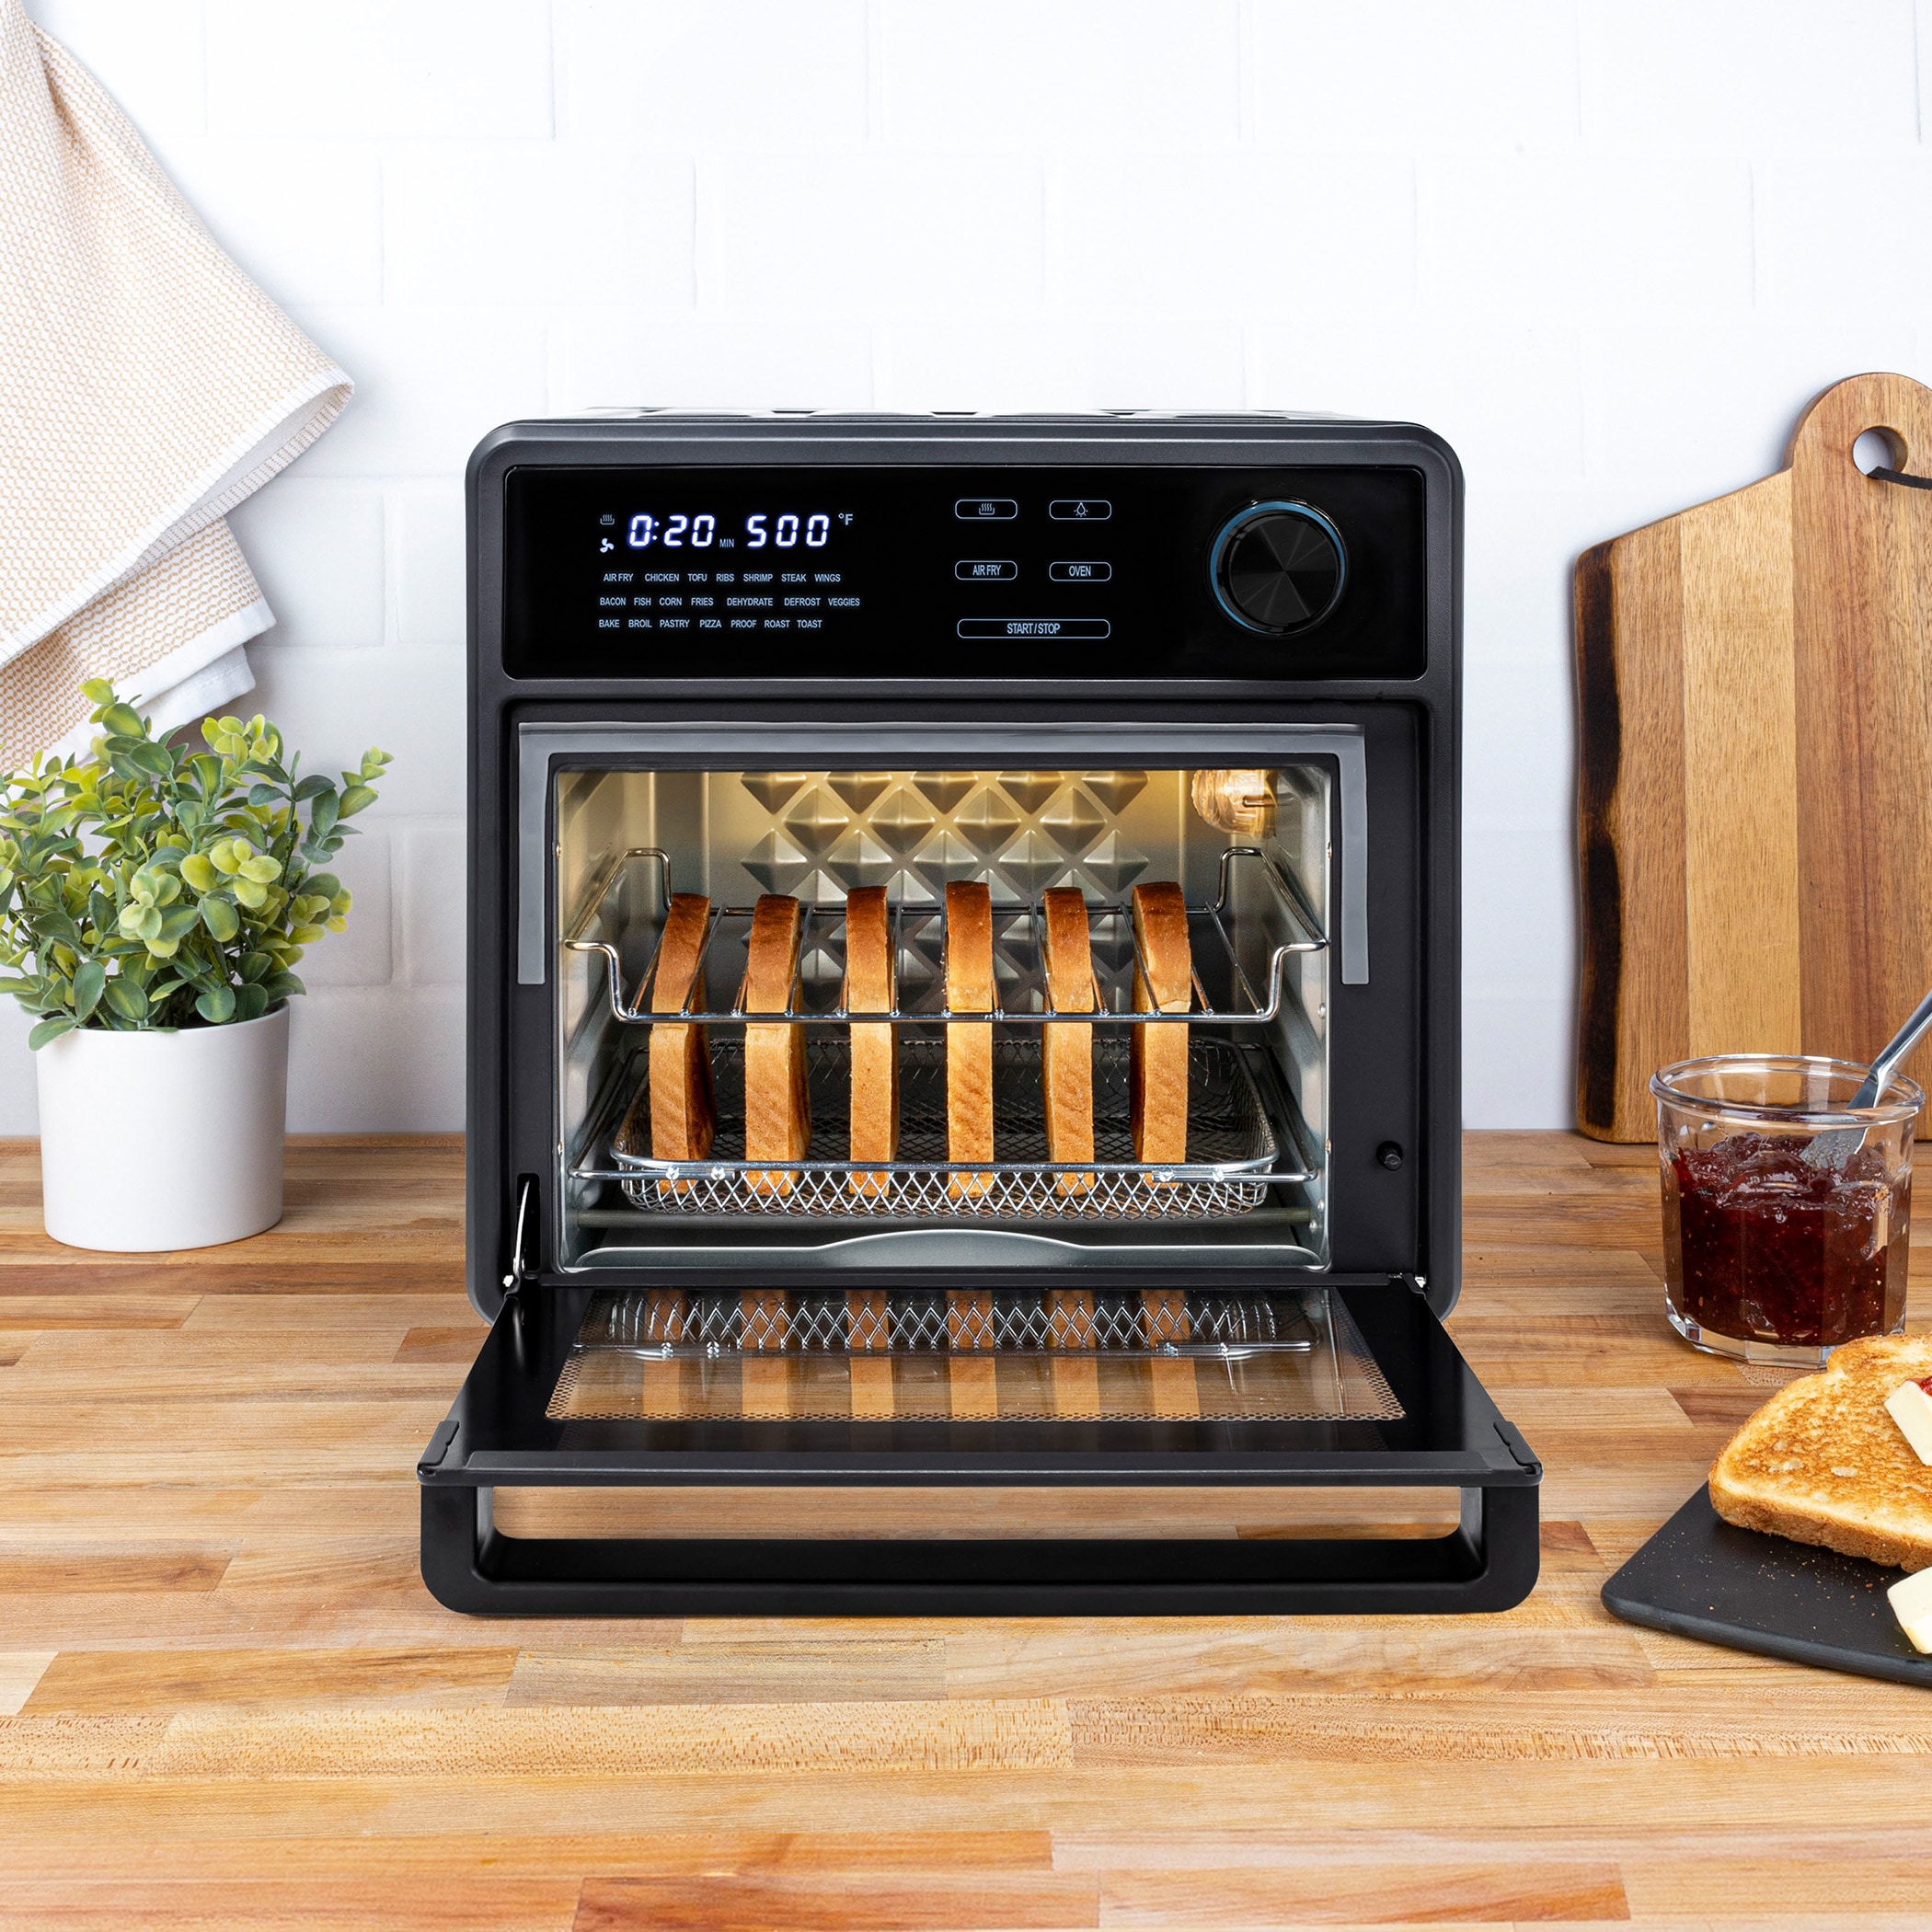 Kalorik Maxx 9-Slice Black Toaster Oven with Rotisserie (1600-Watt